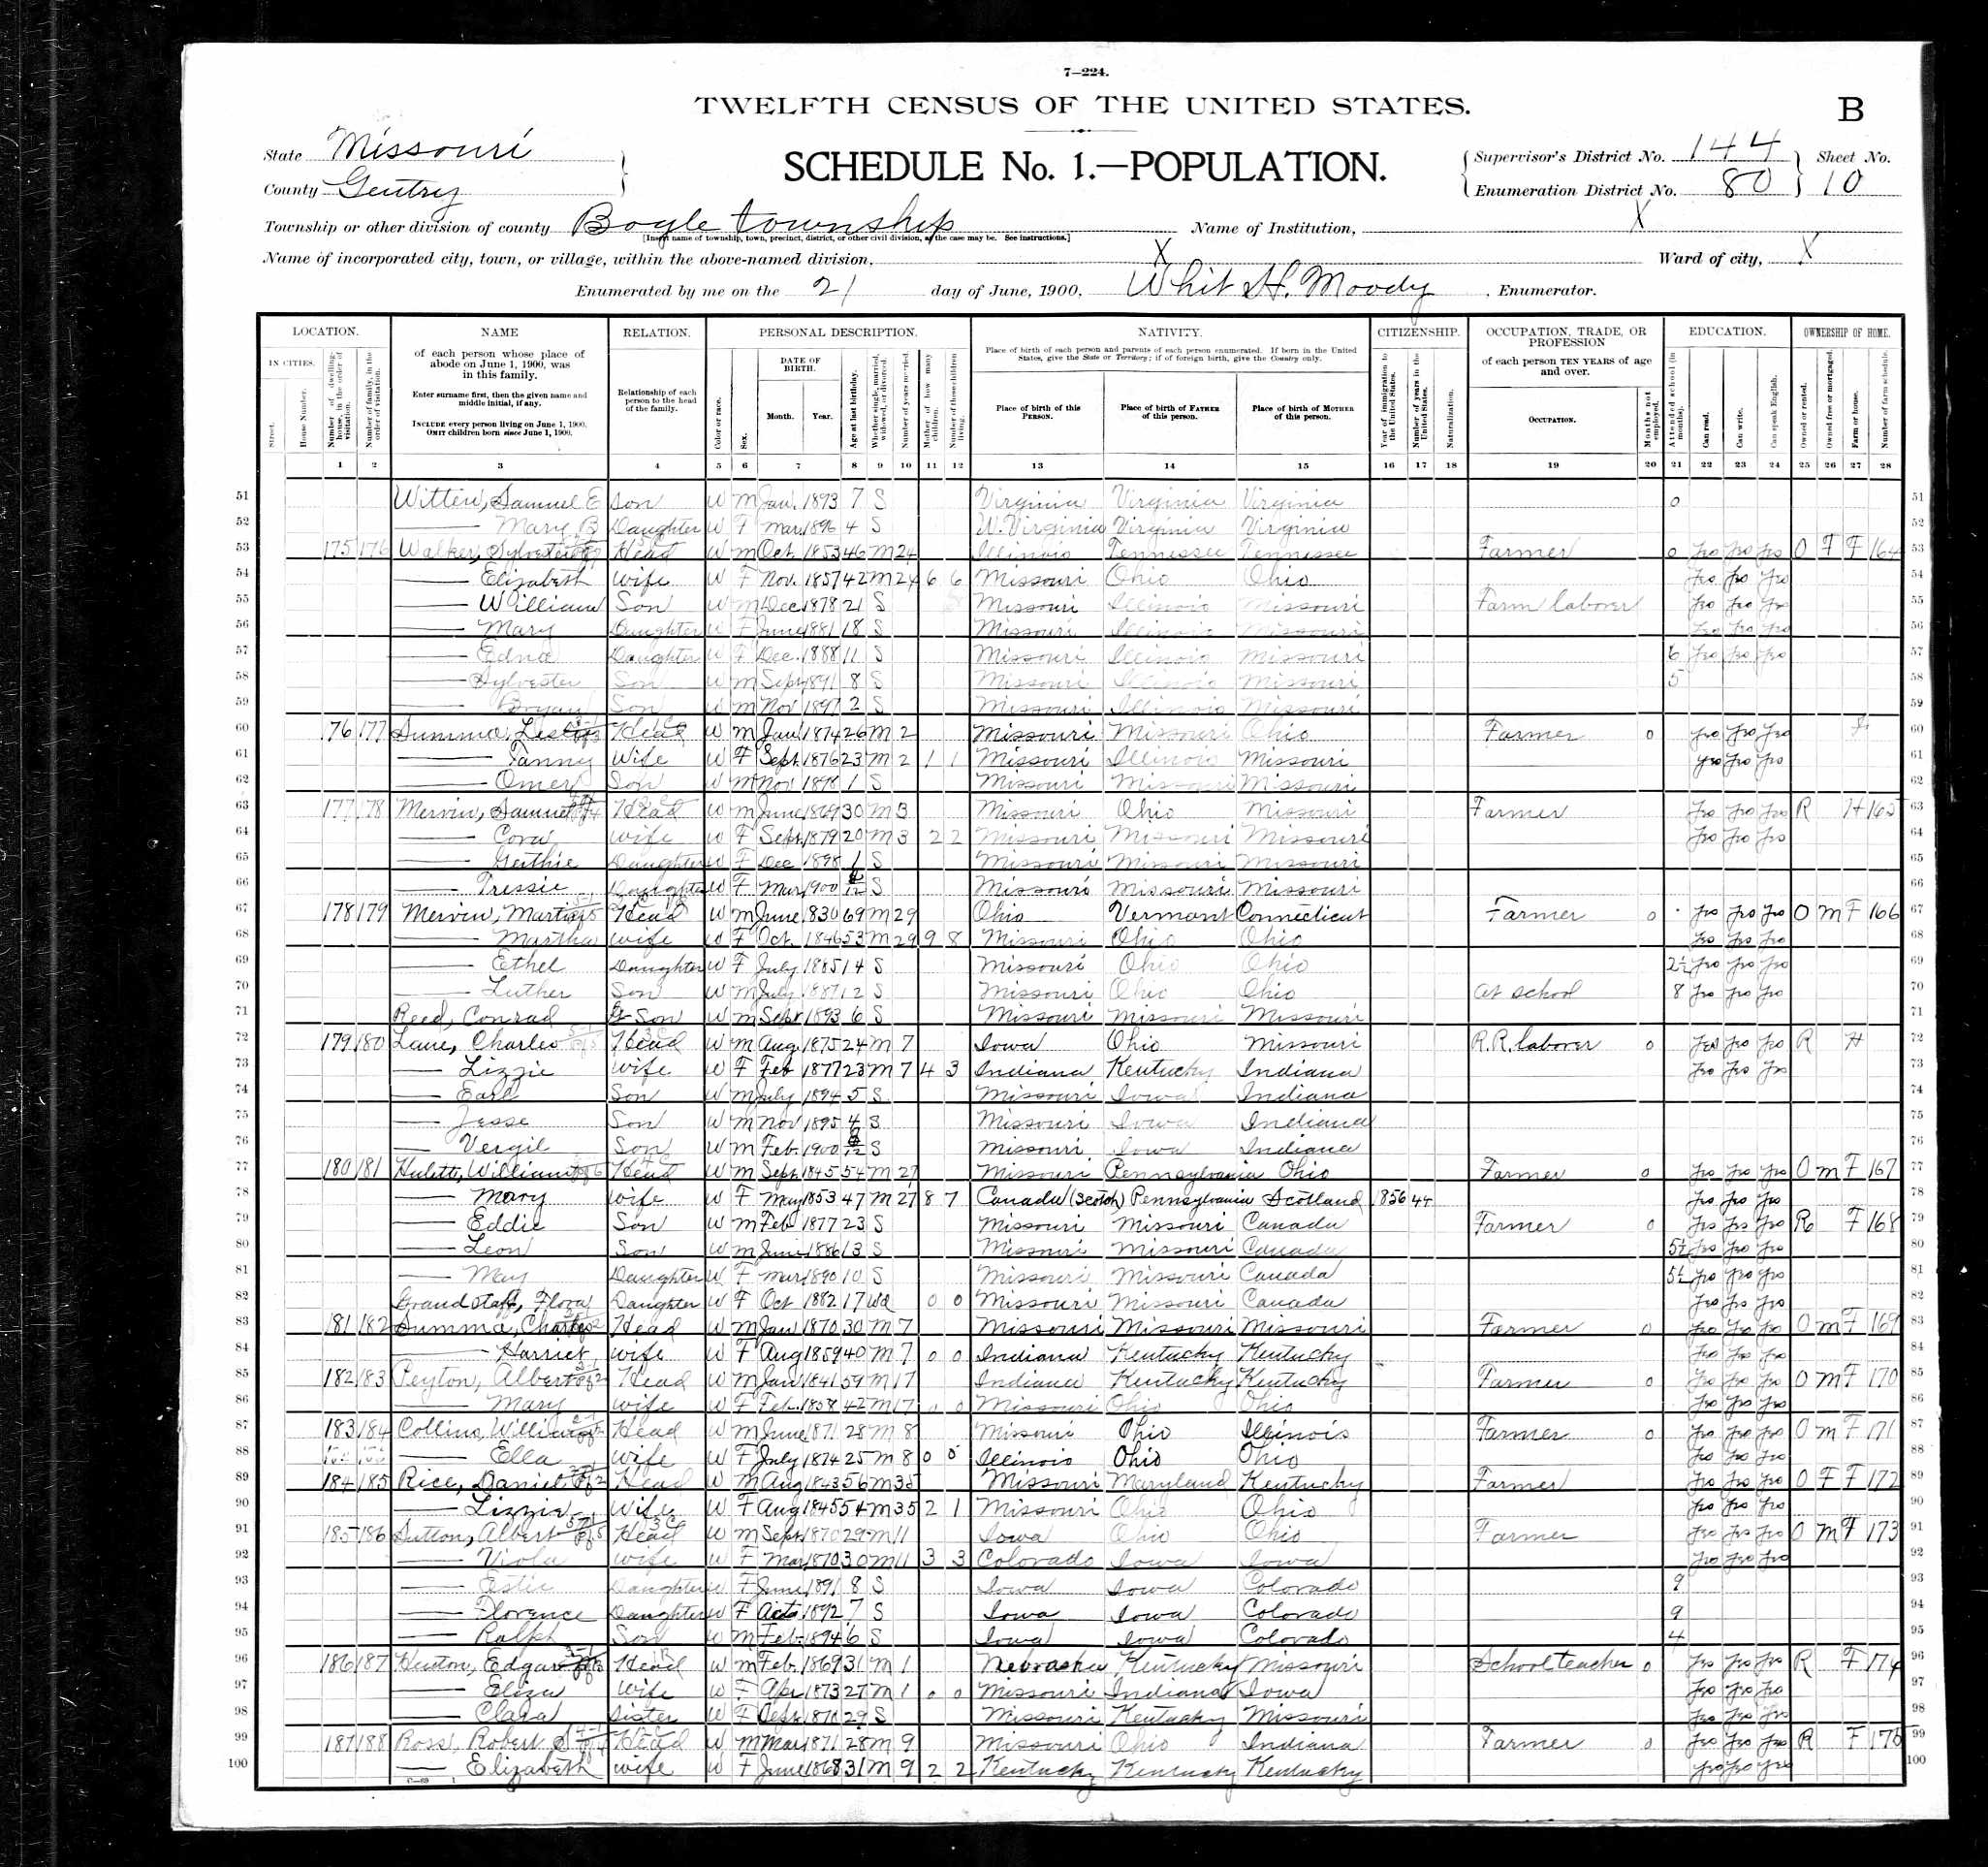 Sylvester Elliott Walker, 1900 Gentry County, Missouri, census